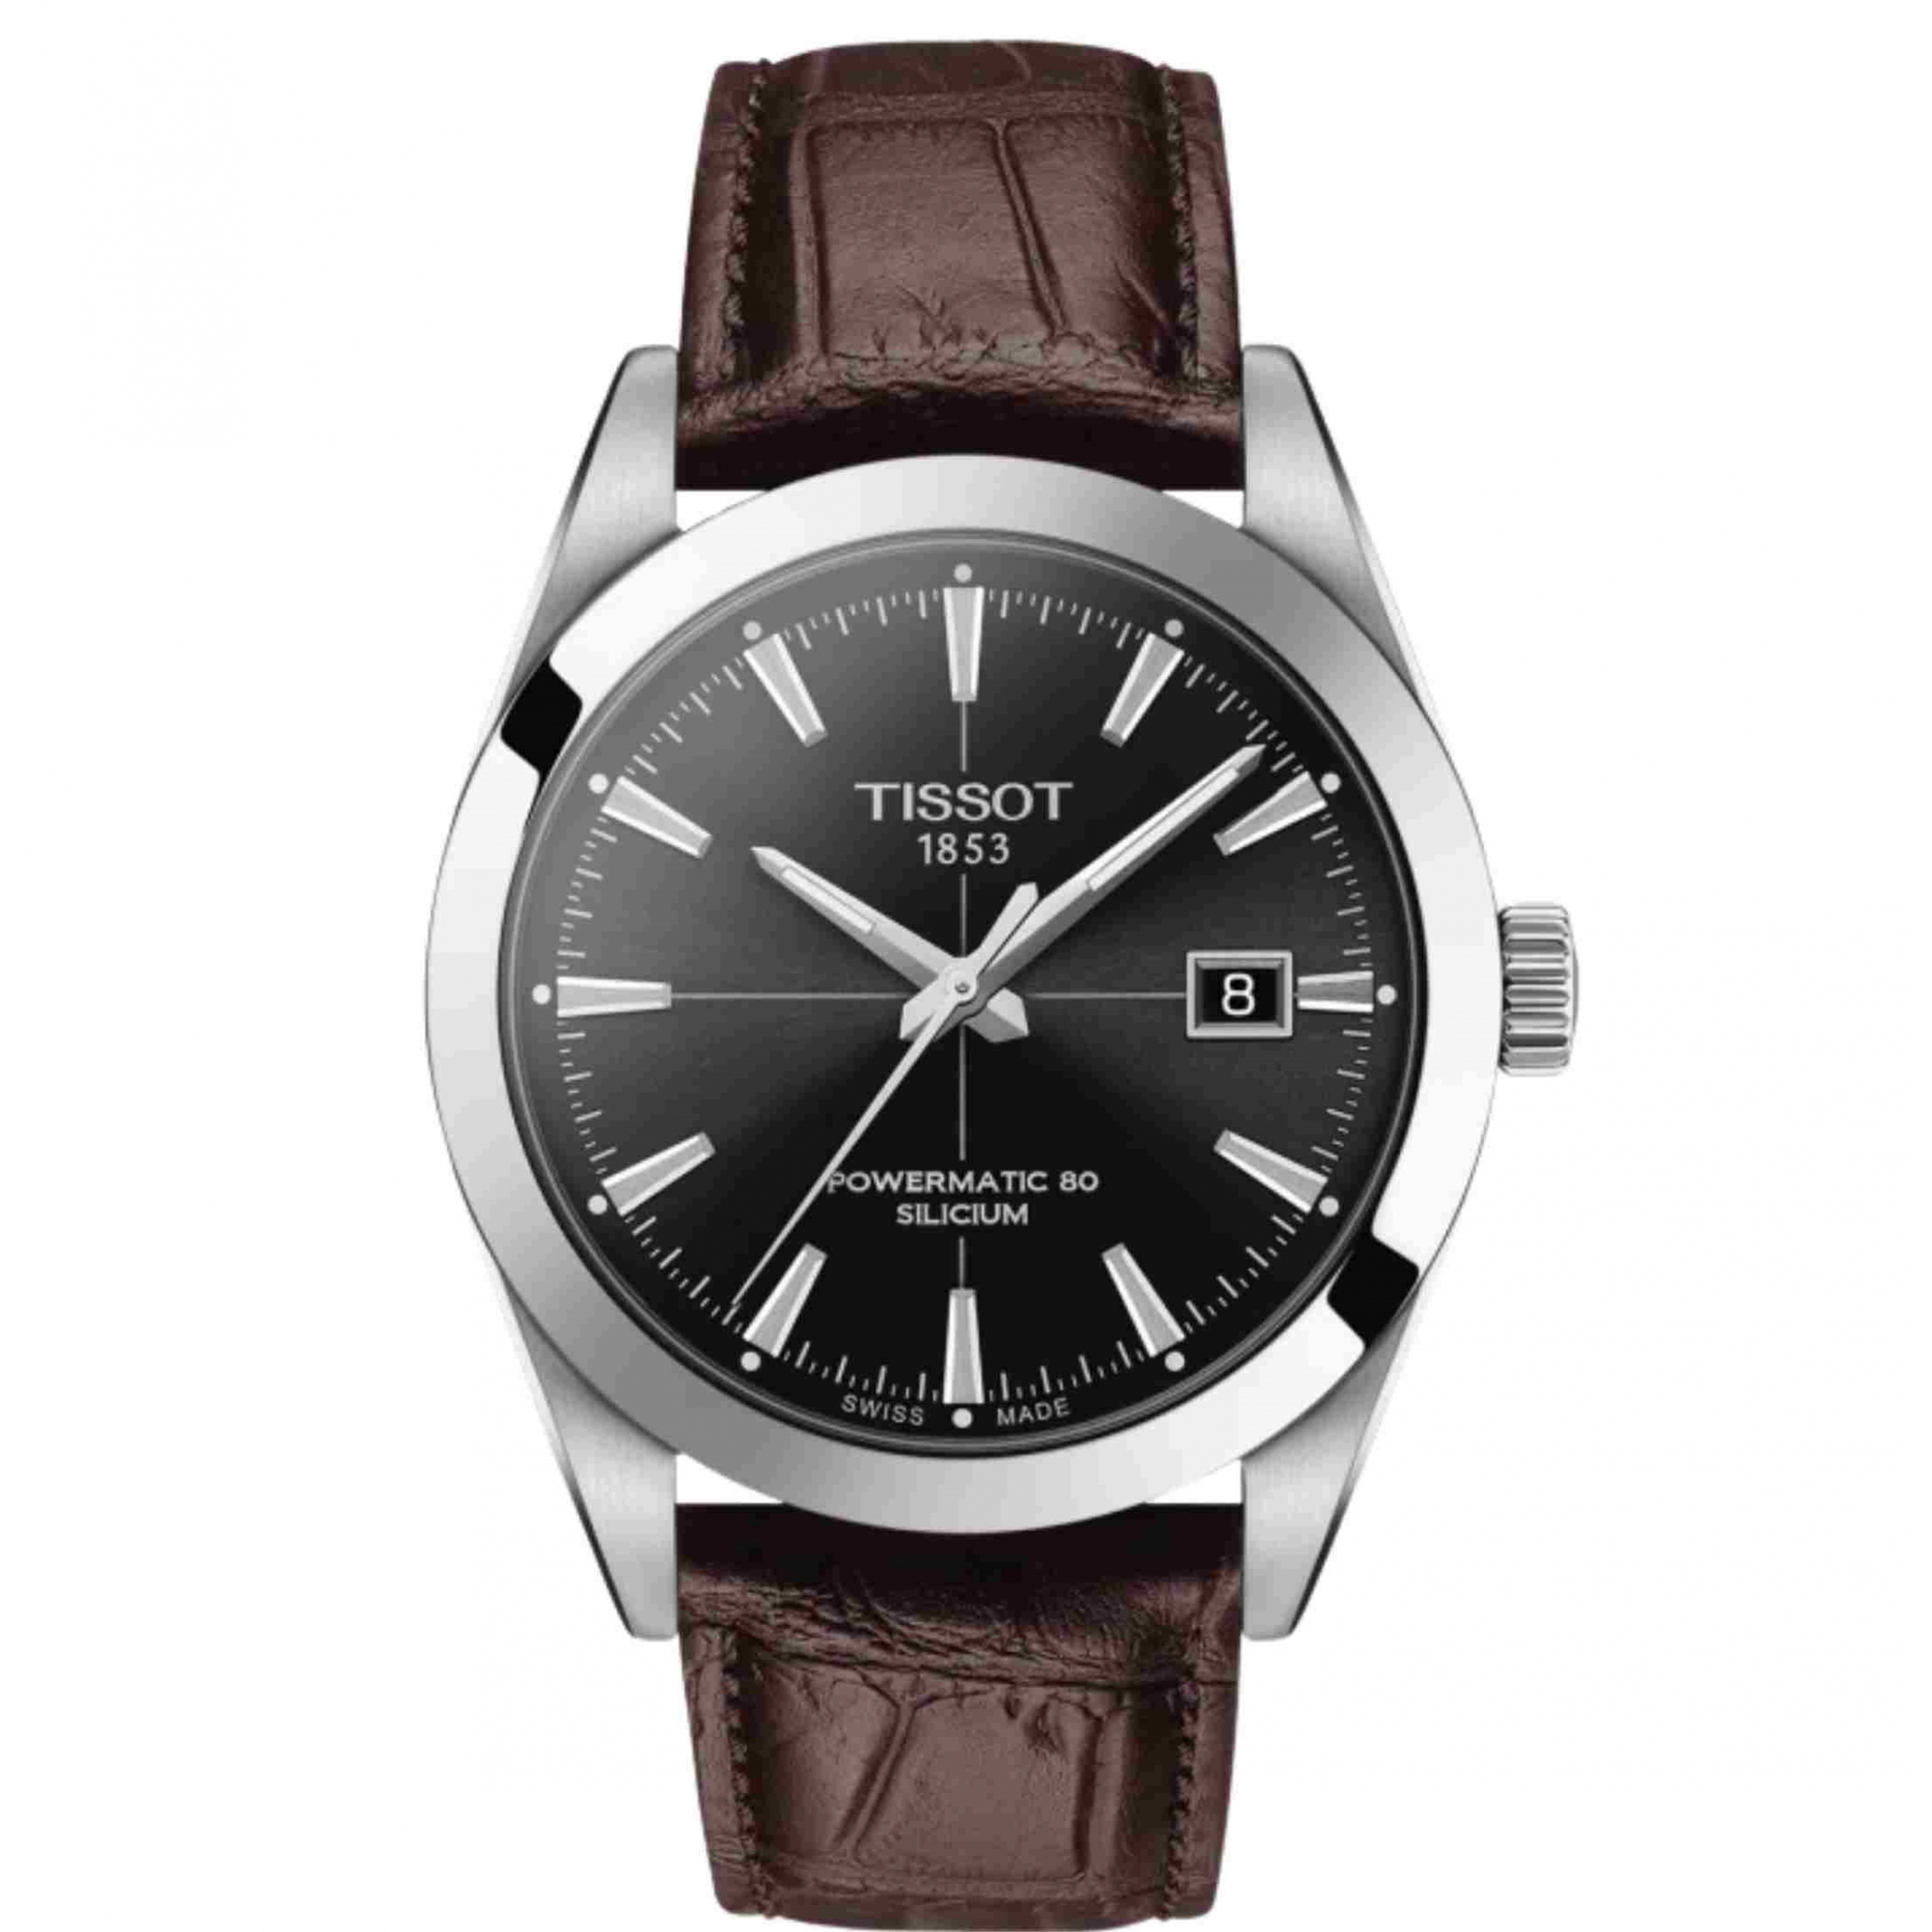 Relógio Tissot T-Classic Gentleman Powermatic 80 Silicium Preto T127.407.16.051.01